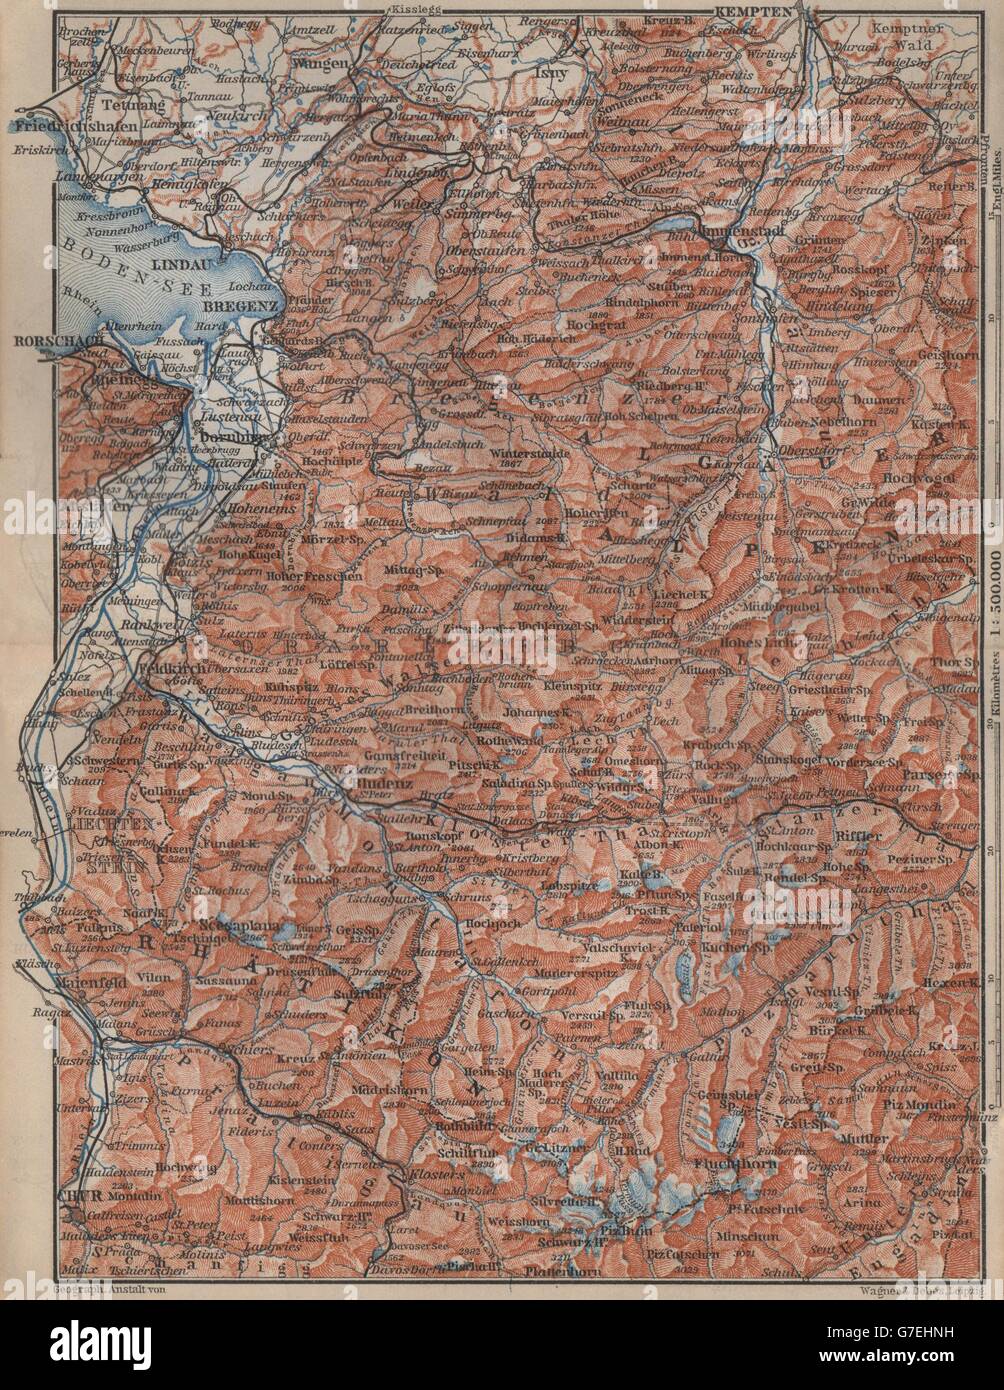 VORARLBERG & BREGENZER WALD. Bludenz St Anton Zürs Lech See Ischgl, 1905 map Stock Photo